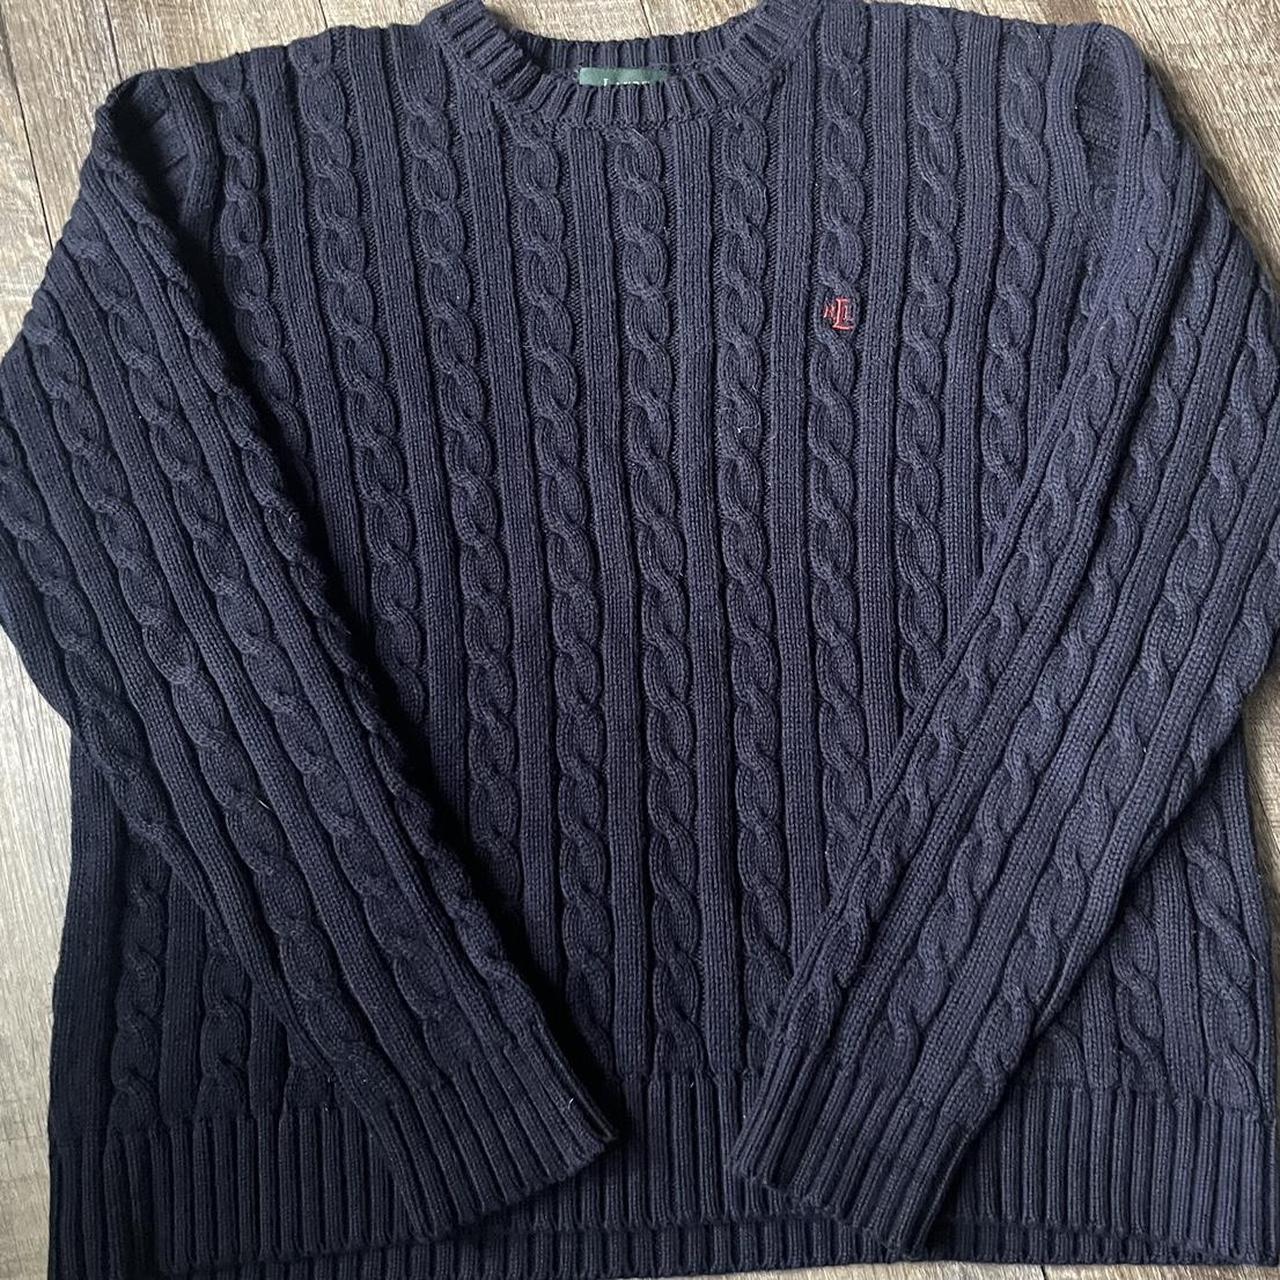 Ralph Lauren sweater - Depop